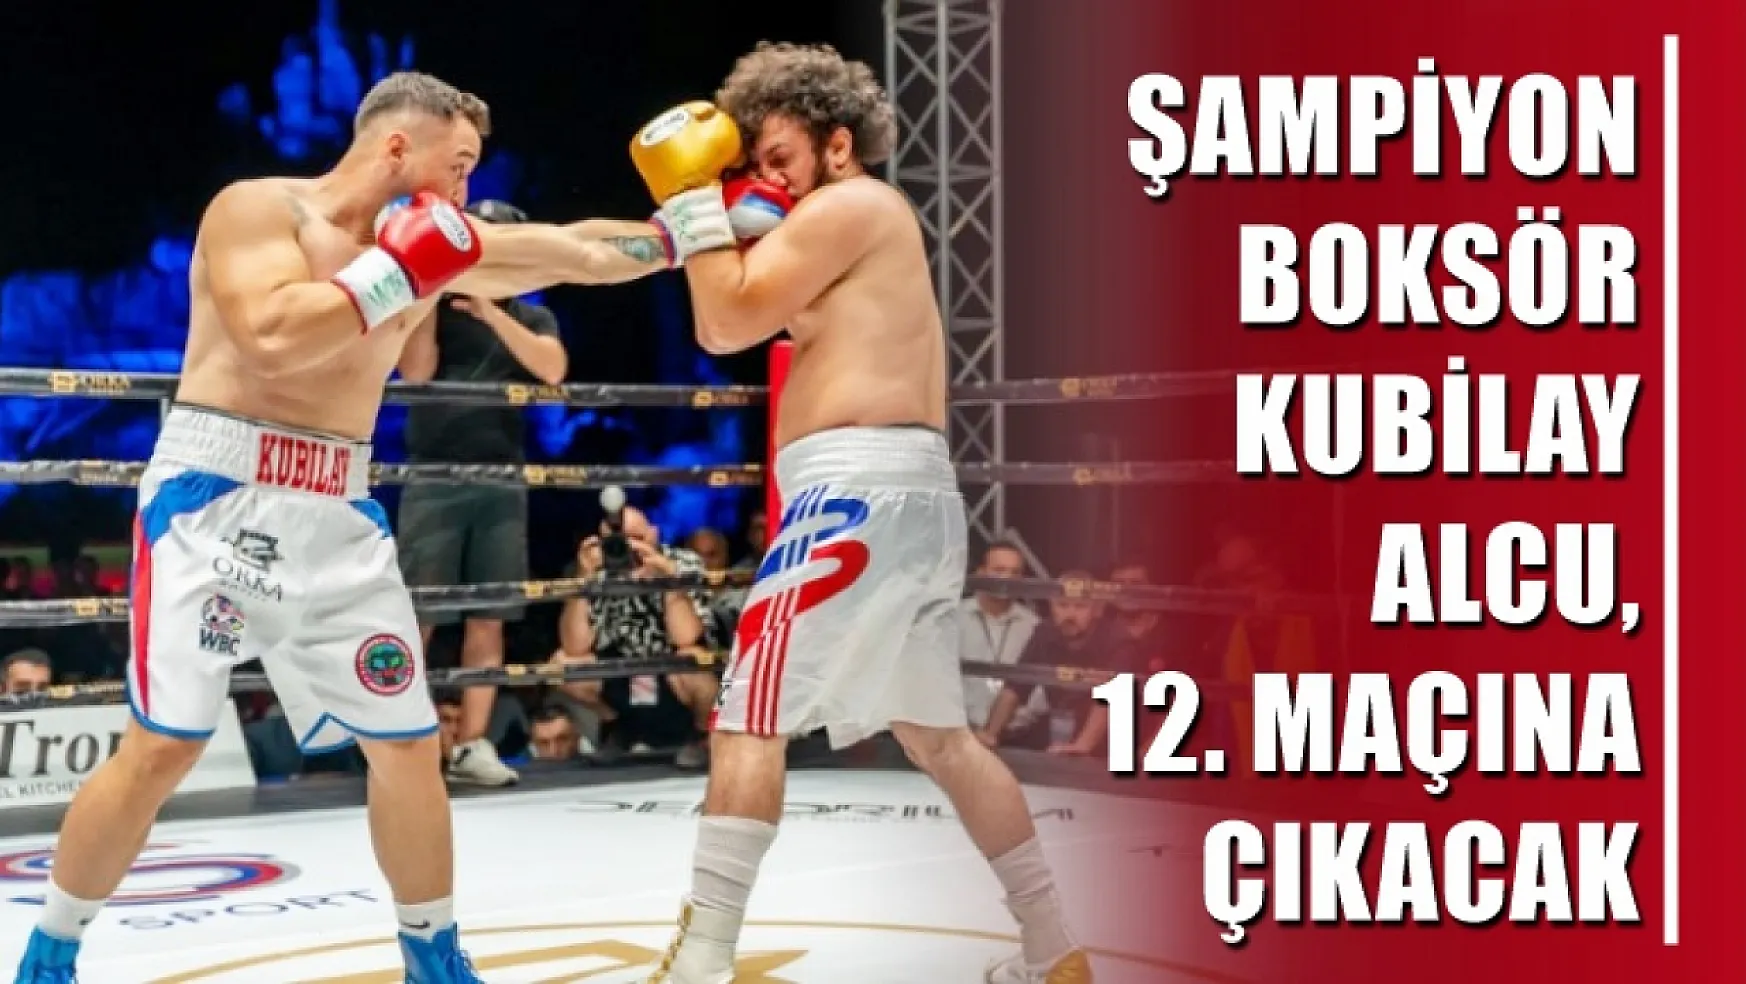 Şampiyon Boksör Kubilay Alcu, 12. maçına çıkacak